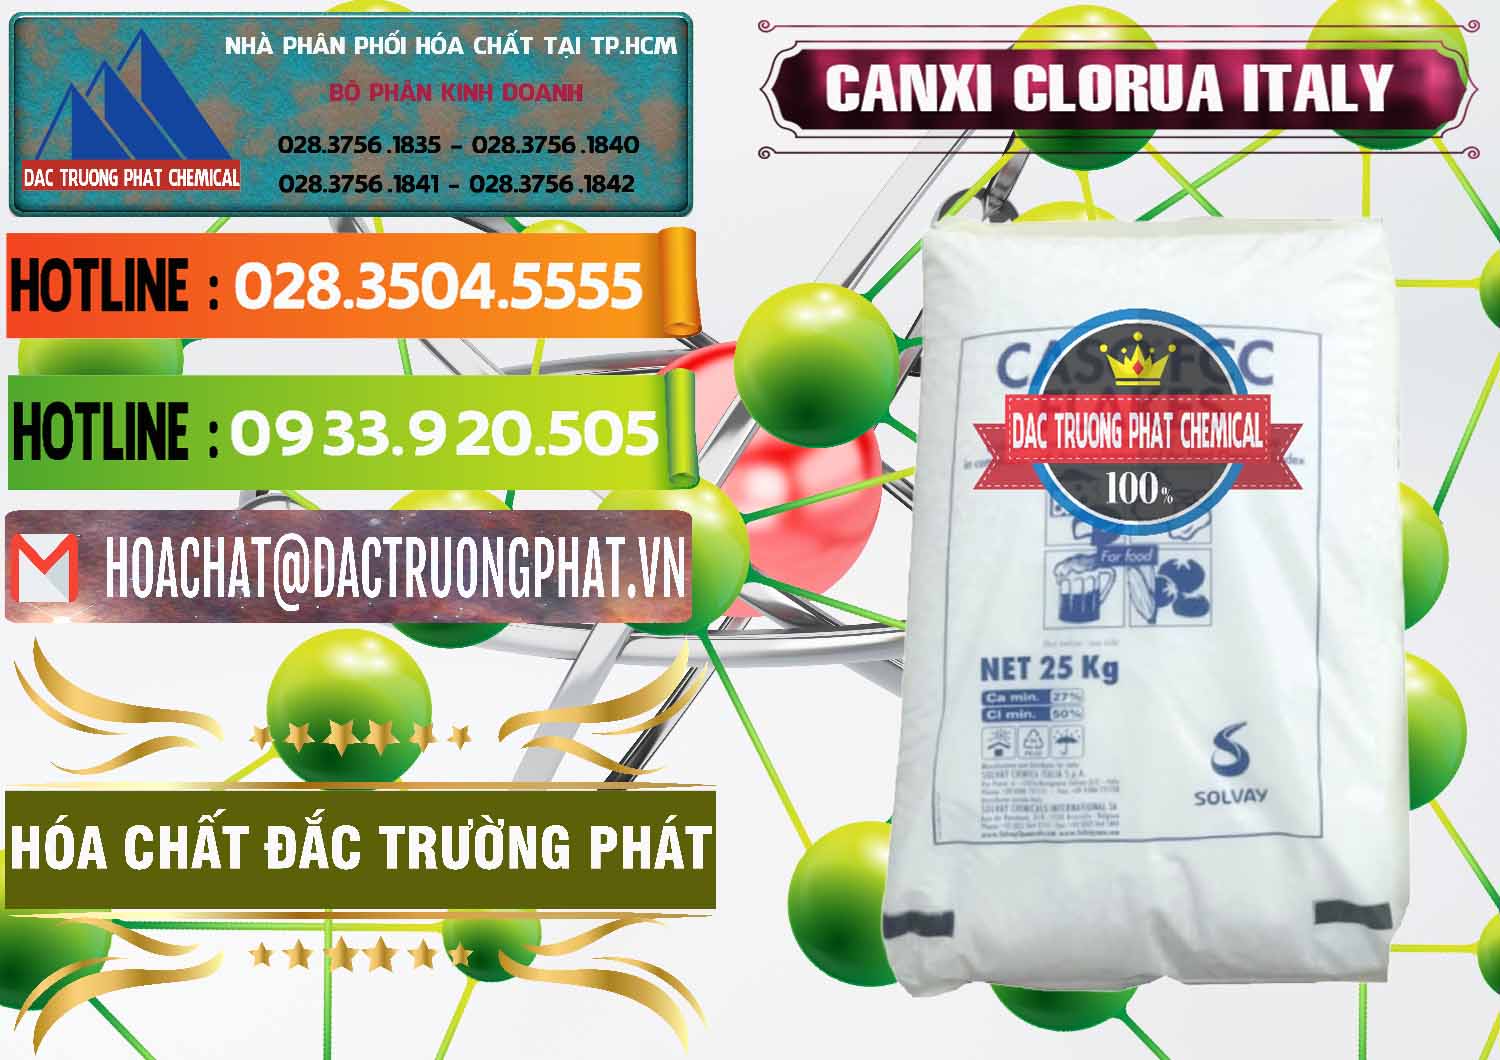 Công ty bán _ cung cấp CaCl2 – Canxi Clorua Food Grade Ý Italy - 0435 - Nhà phân phối _ kinh doanh hóa chất tại TP.HCM - cungcaphoachat.com.vn